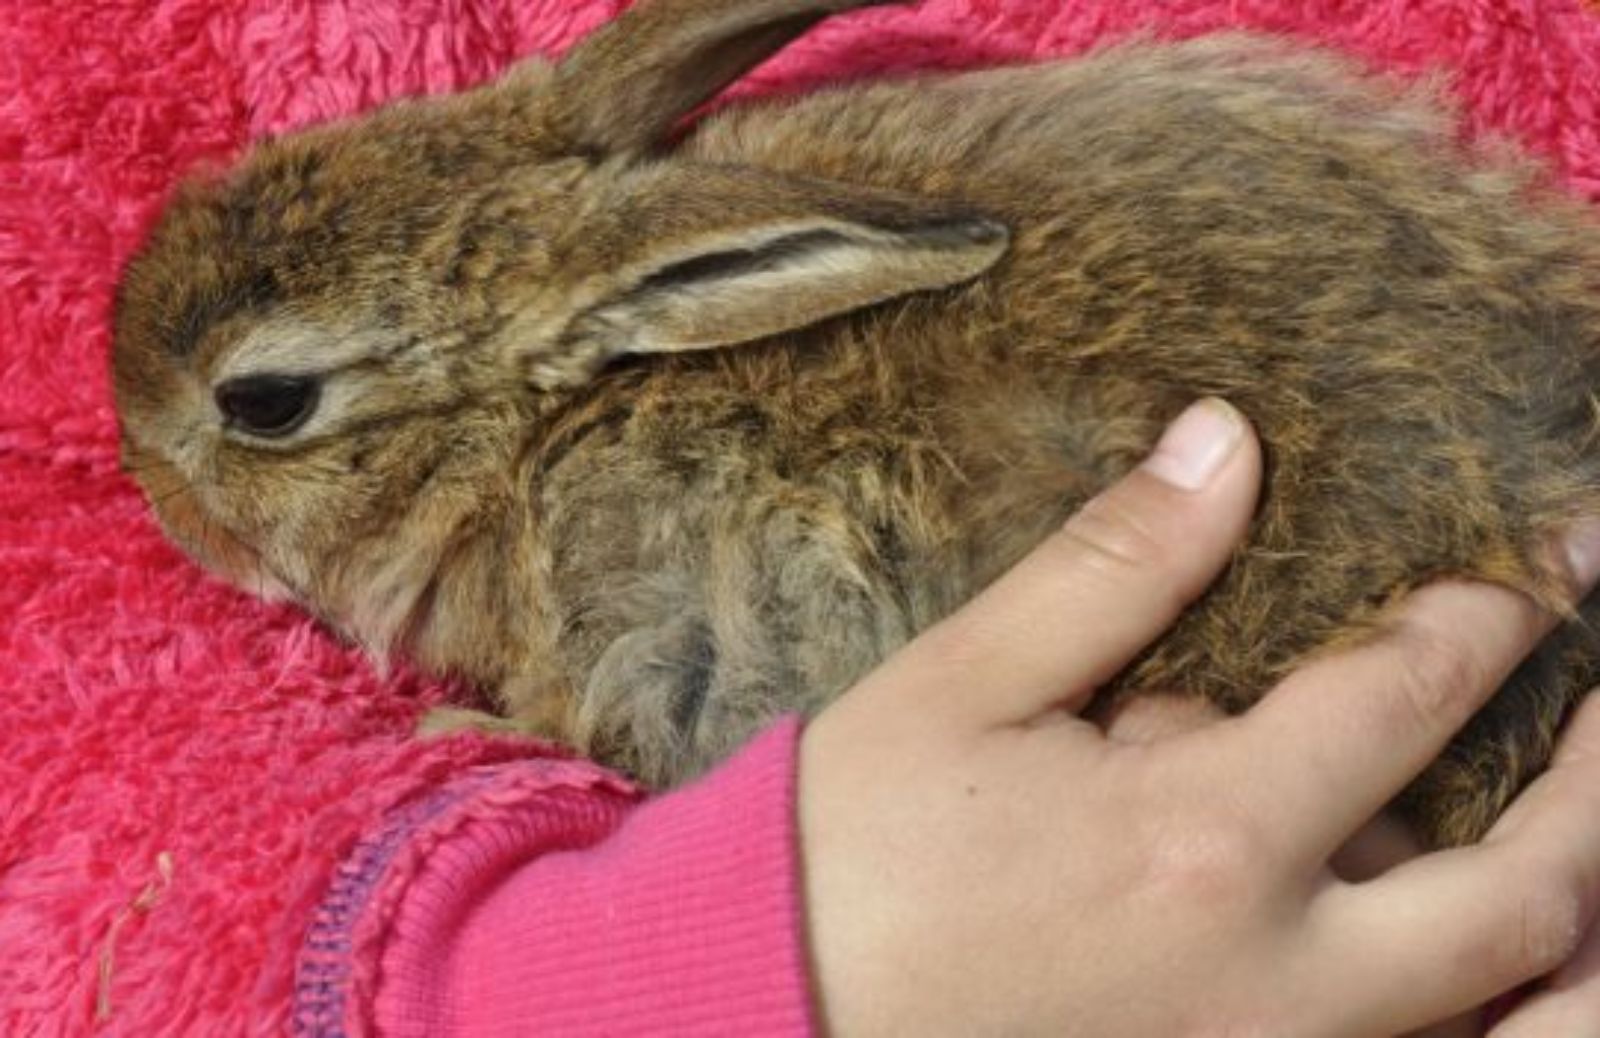 Come prendere in braccio un coniglio